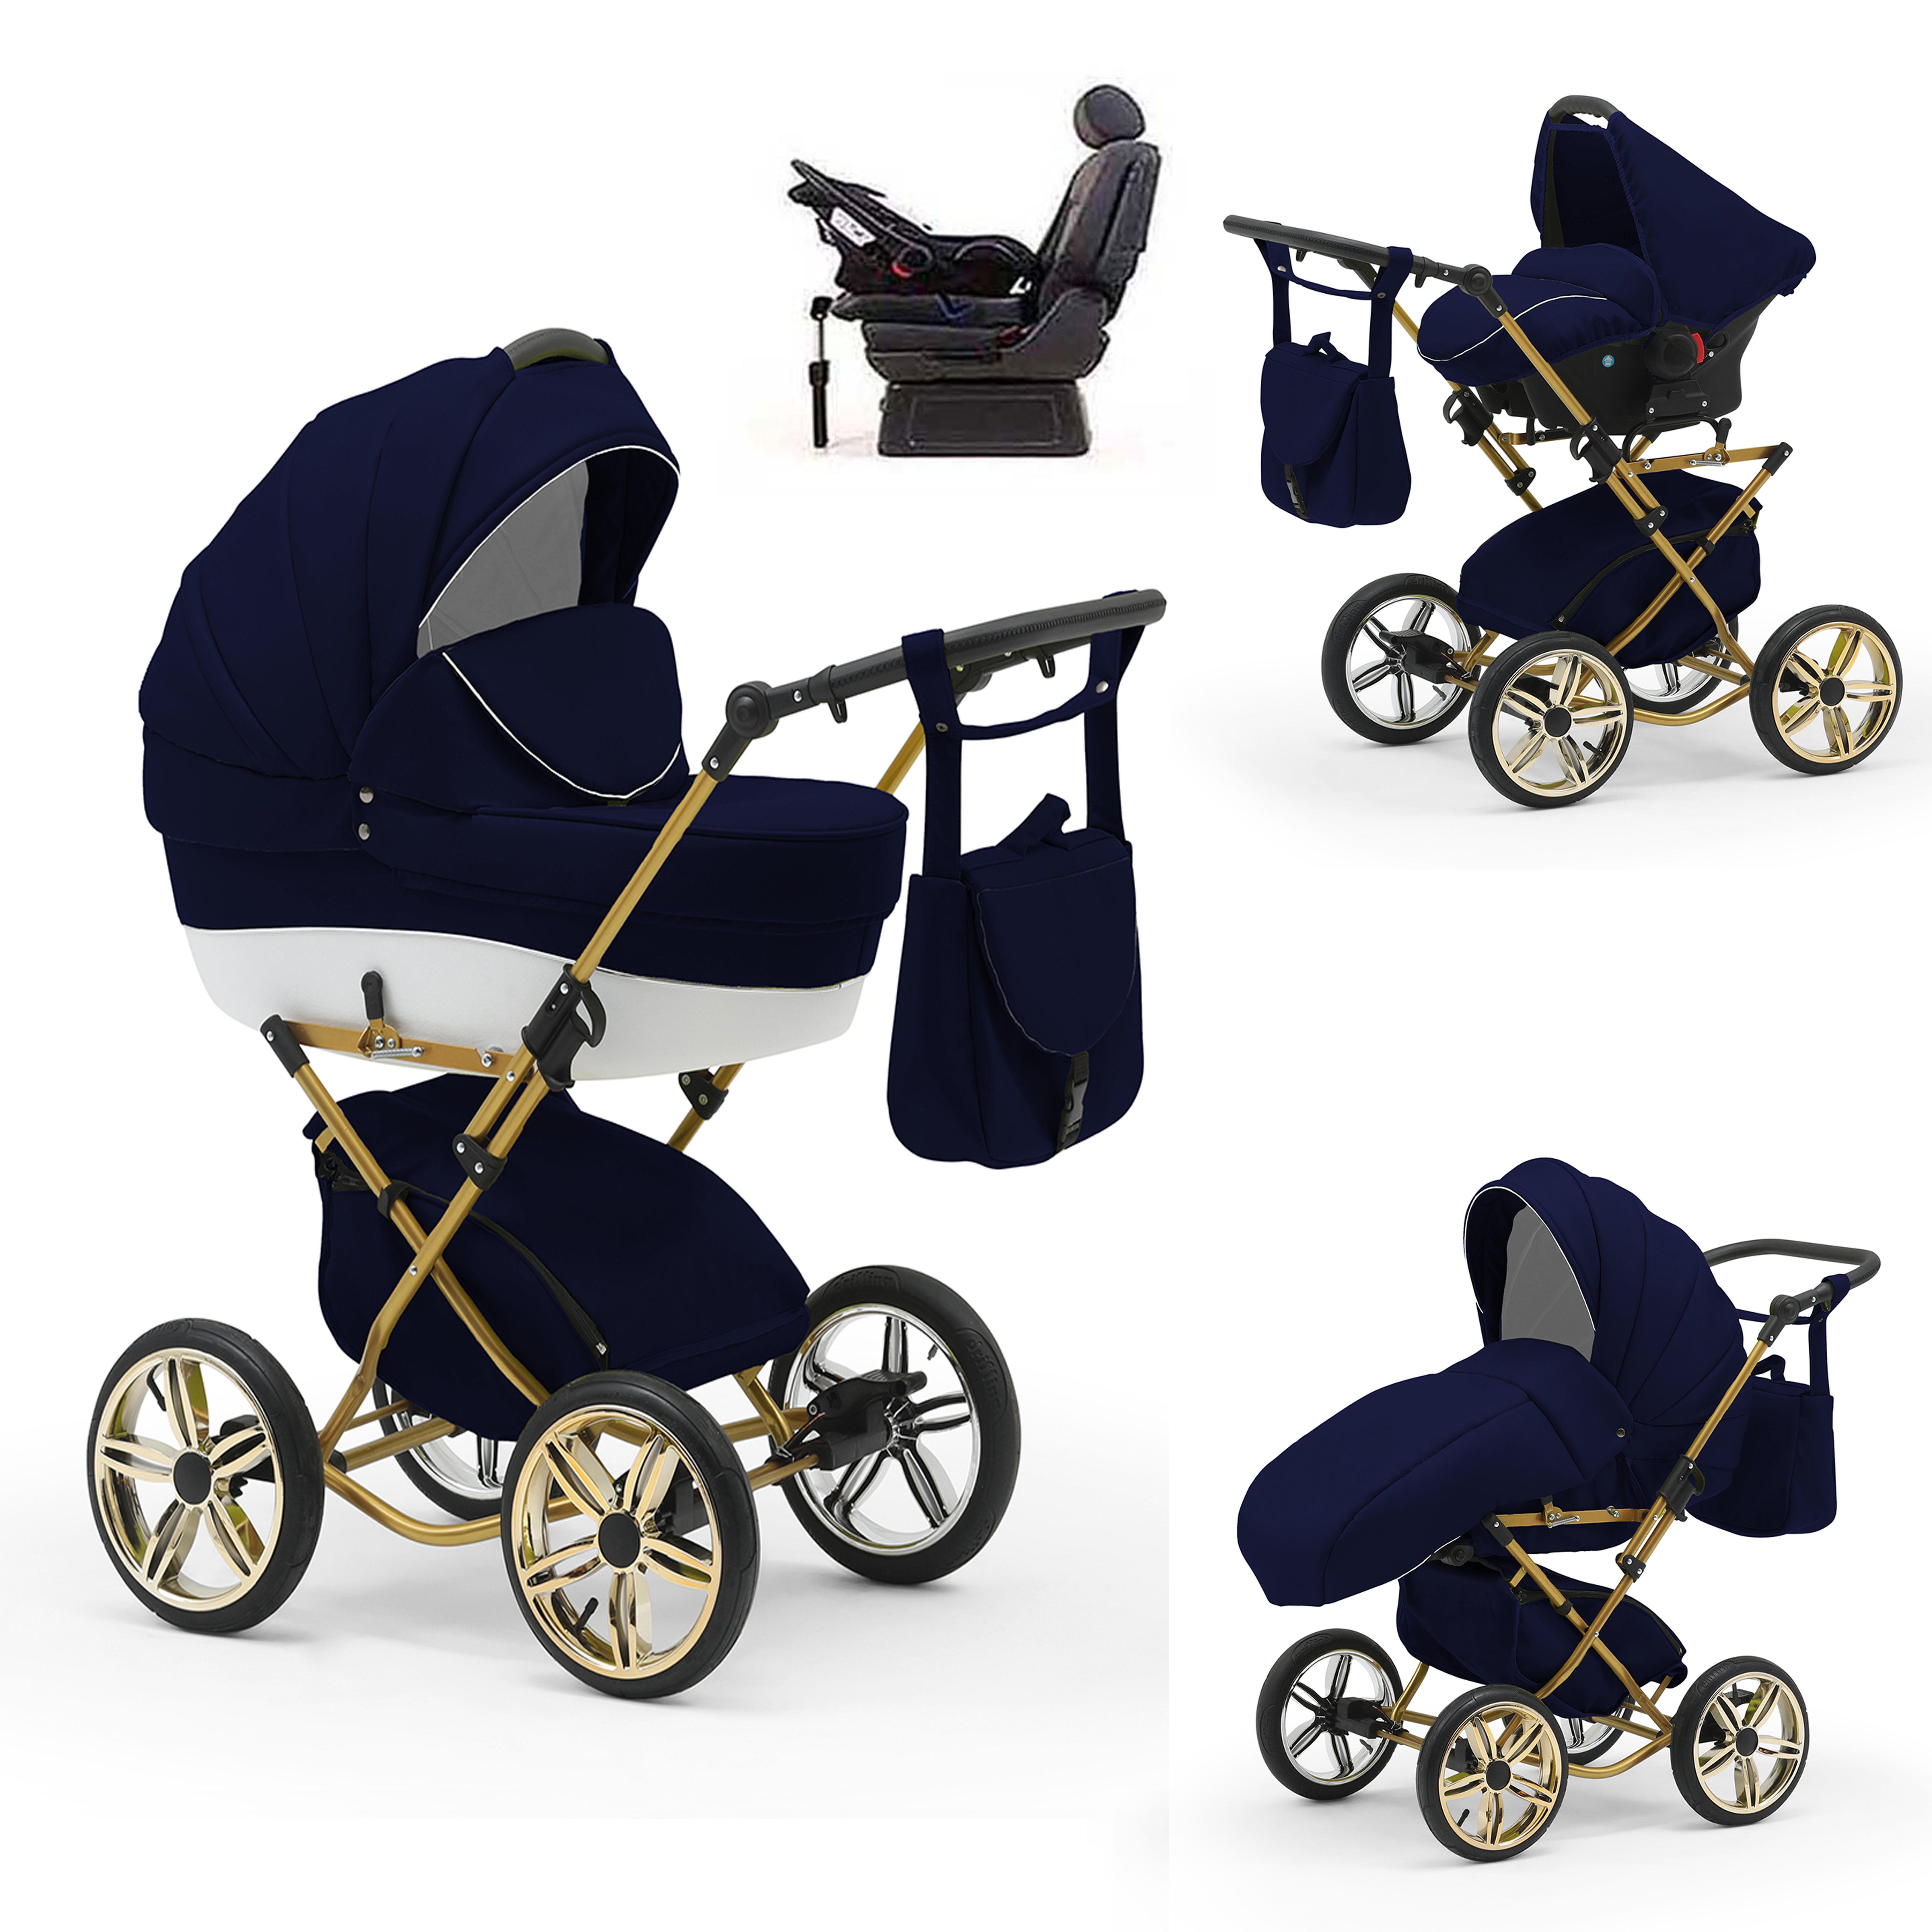 babies-on-wheels Kombi-Kinderwagen Sorento 4 in 1 inkl. Autositz und Iso Base - 14 Teile - in 10 Designs Navy-Weiß | Kombikinderwagen